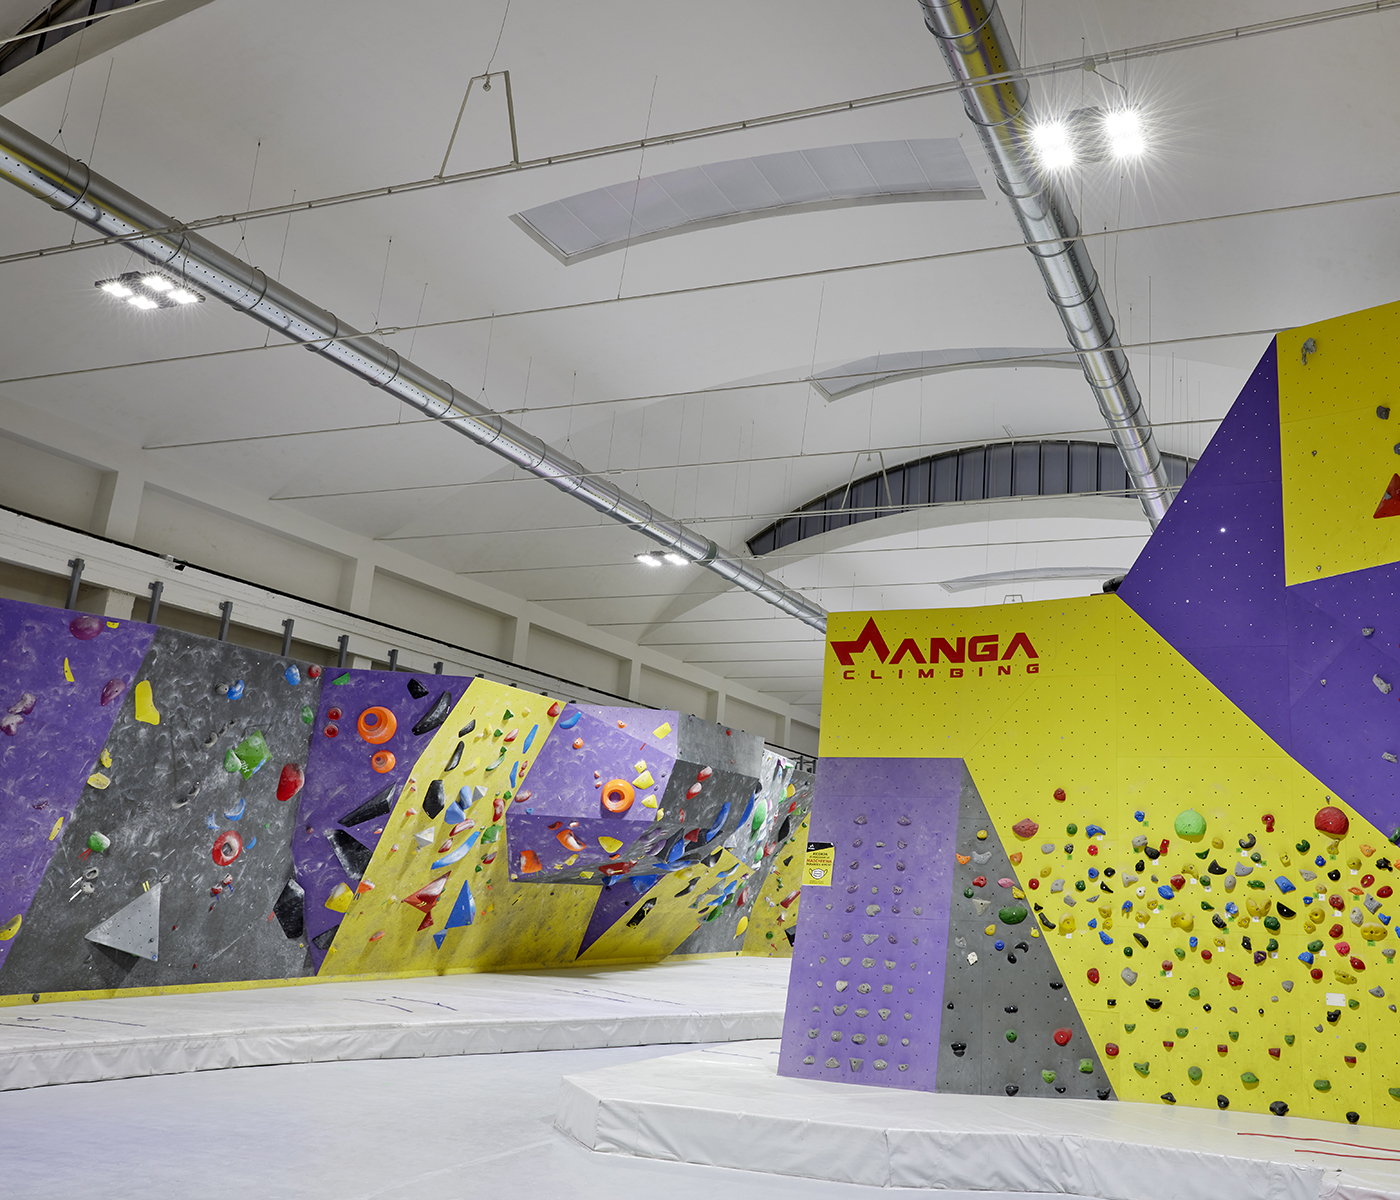 Indoor sport facility Manga Climbing